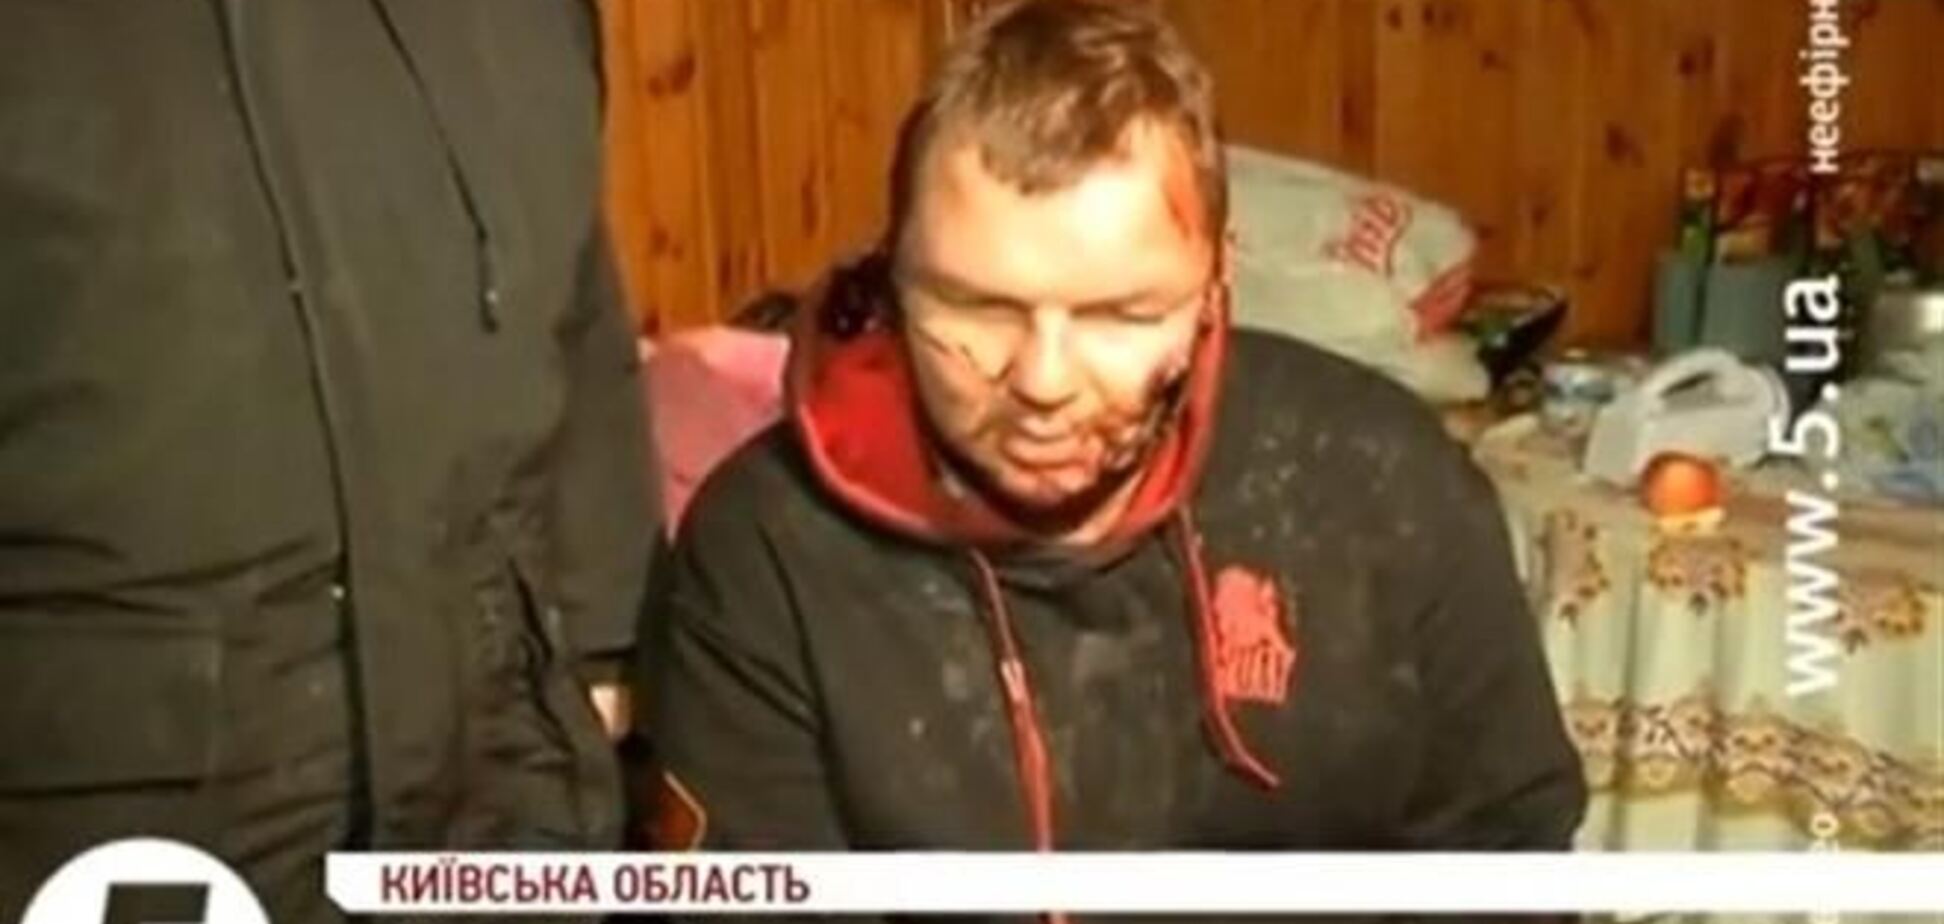 Булатов пришел в село весь в крови - местный житель 